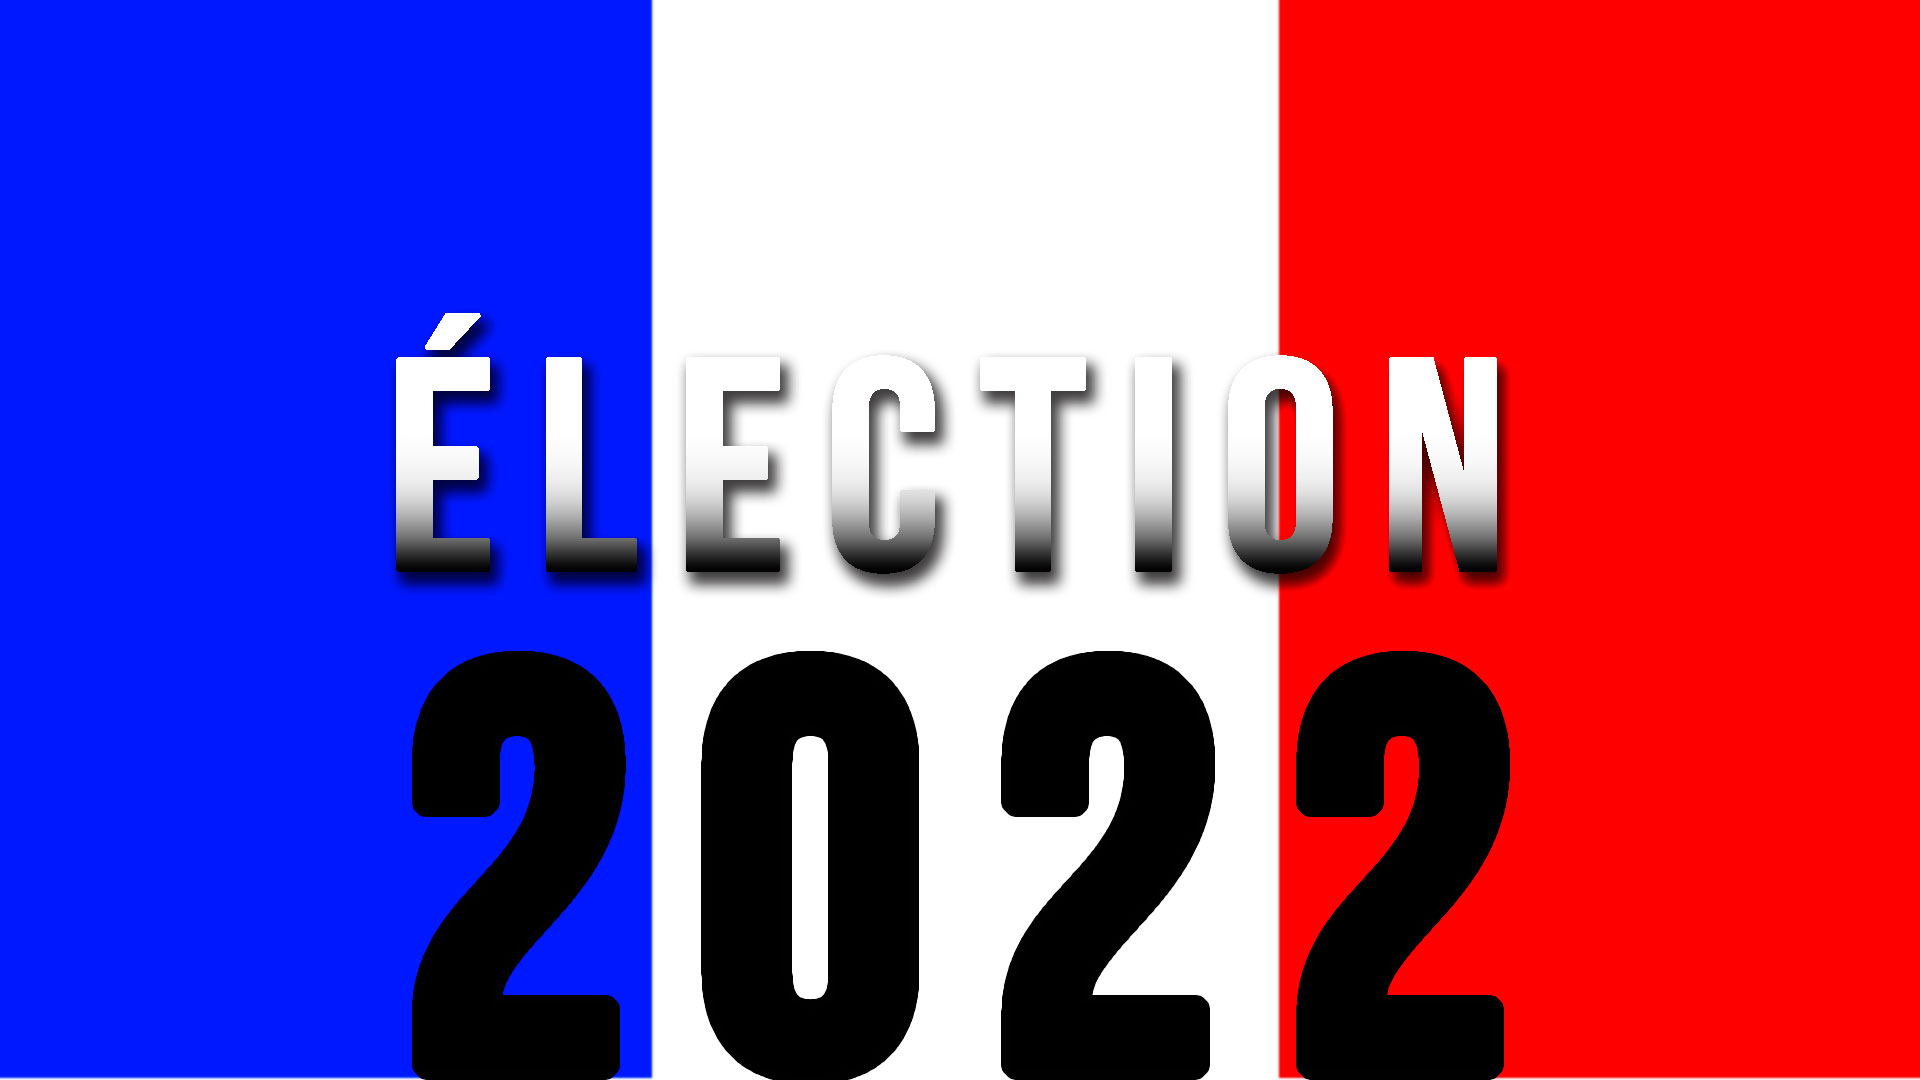 BAM! News - La réalité des Présidentielles en France : Macron choisi par 18% des Français !